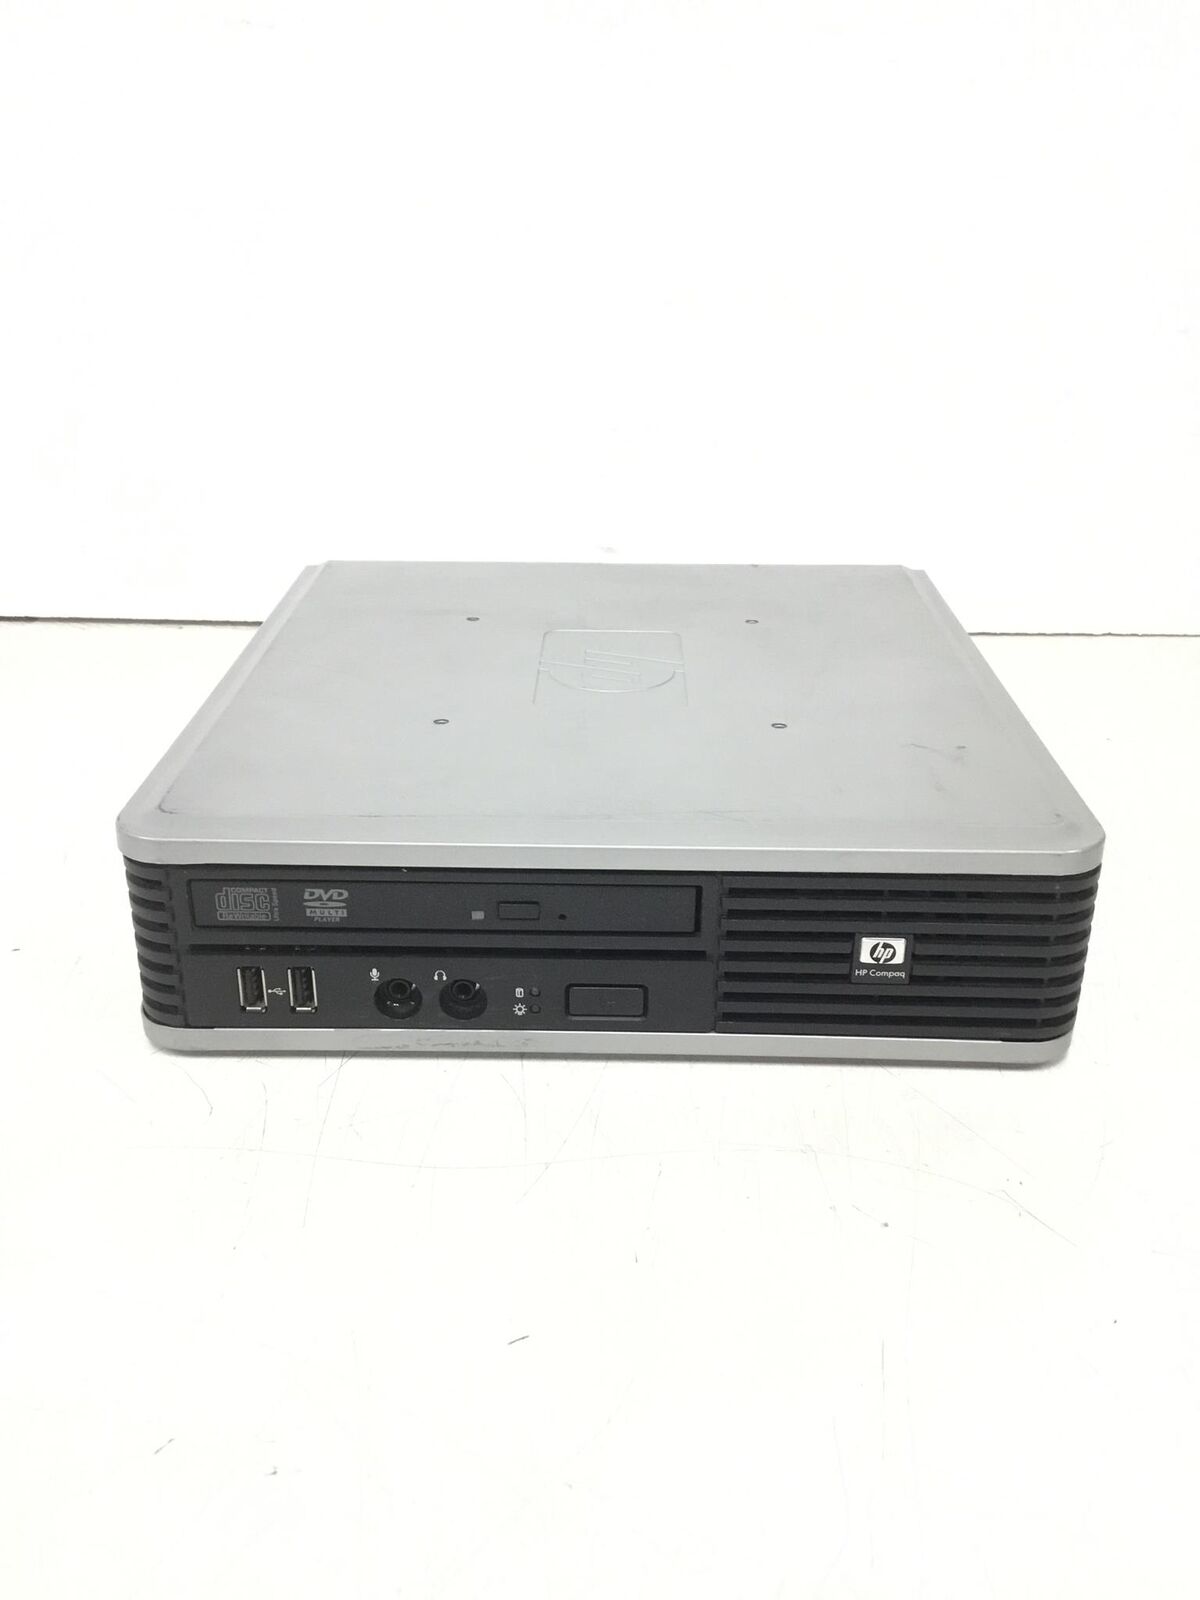 HP Compaq DC7900 Ultra Slim Core 2 Duo E7200 2.53GHz Computer 160GB,DVDRW, no AC